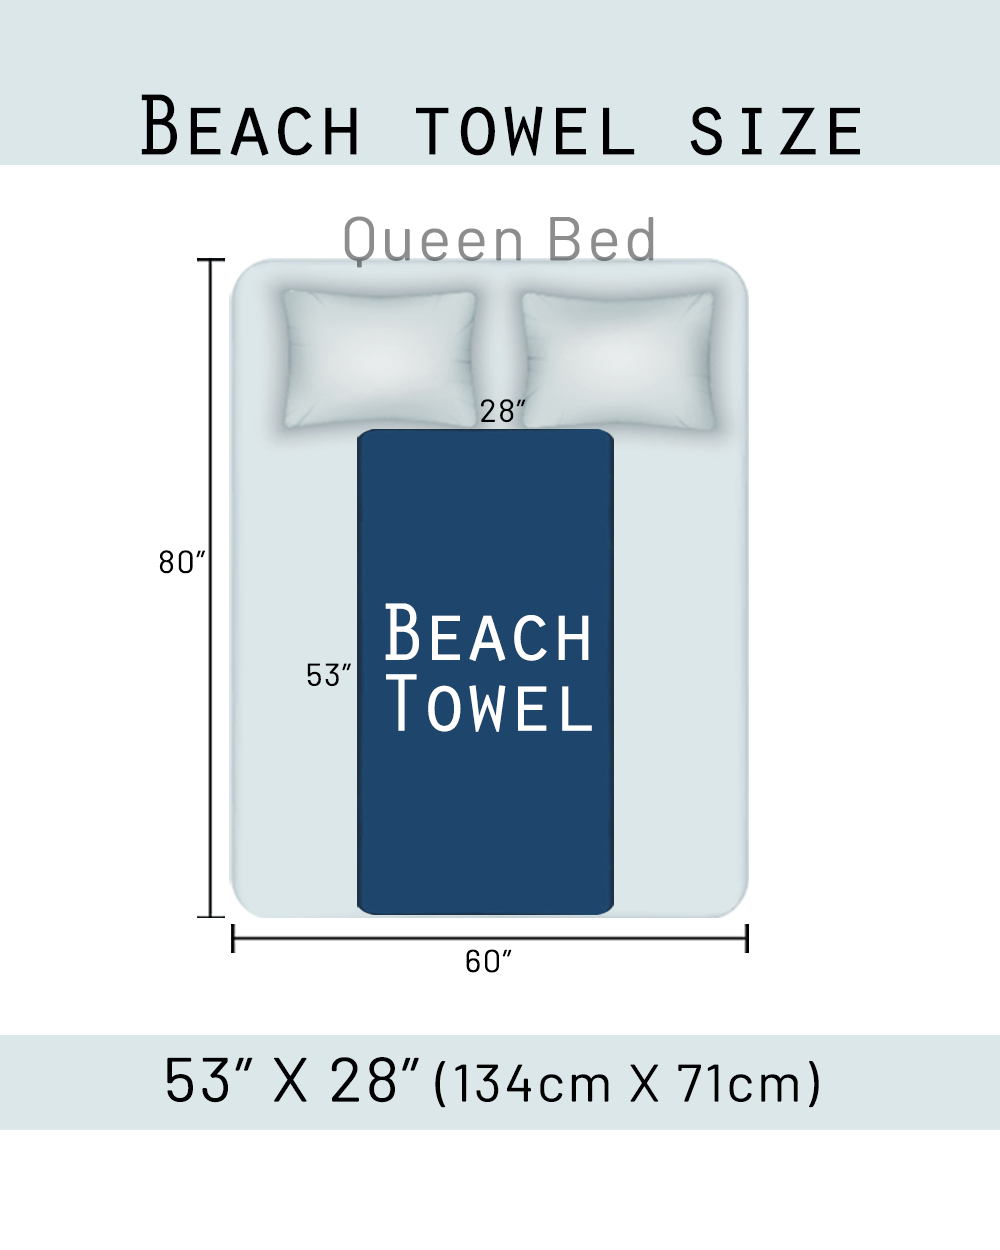 Megan Beach Towel